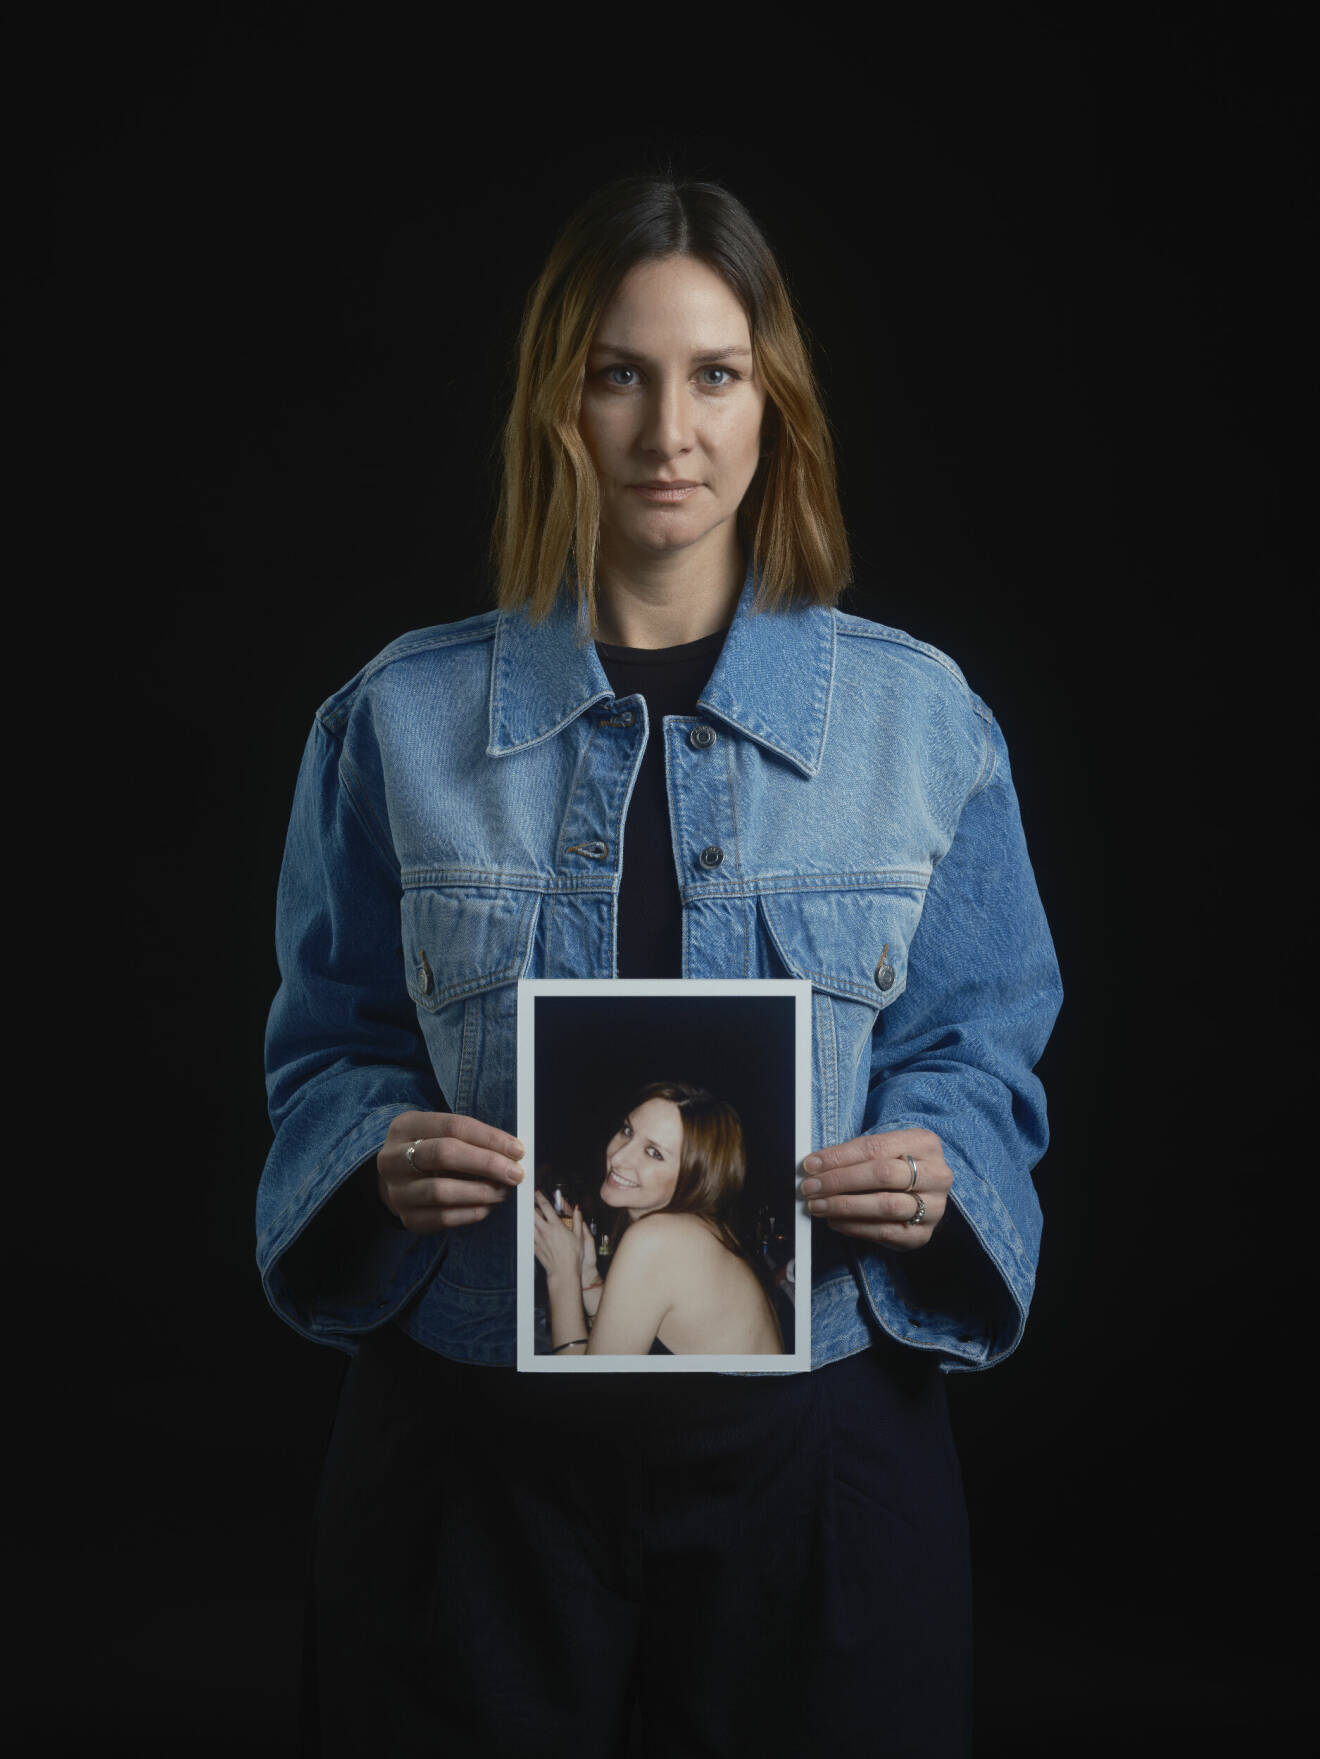 Maria står upp för den svenska lagen om fri abort i Feminas upprop #minaborträtt.